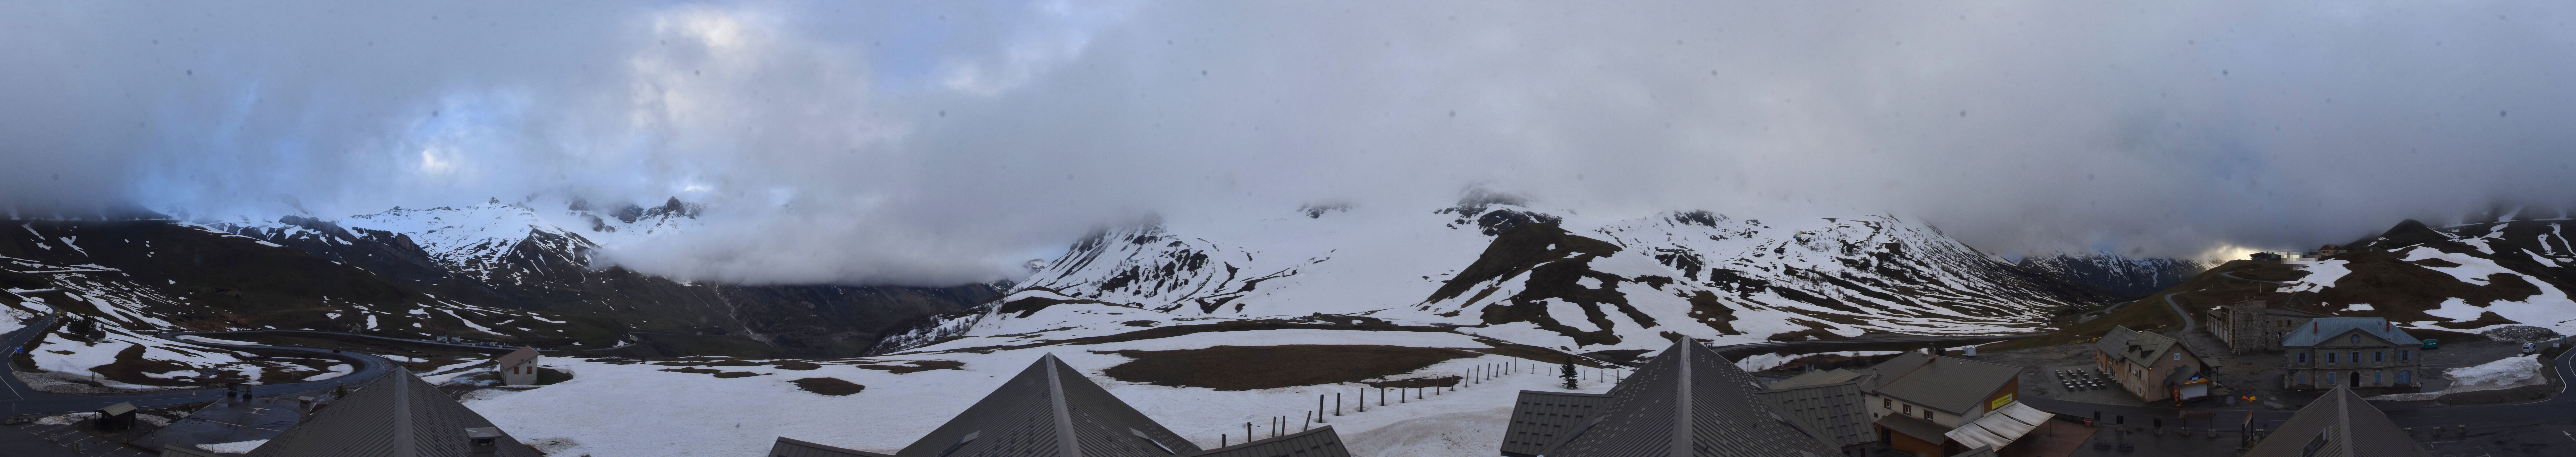 <h2>Webcam du col du Lautaret sur la D1091, au niveau du plus haut col français ouvert à la circulation automobile en hiver</h2>